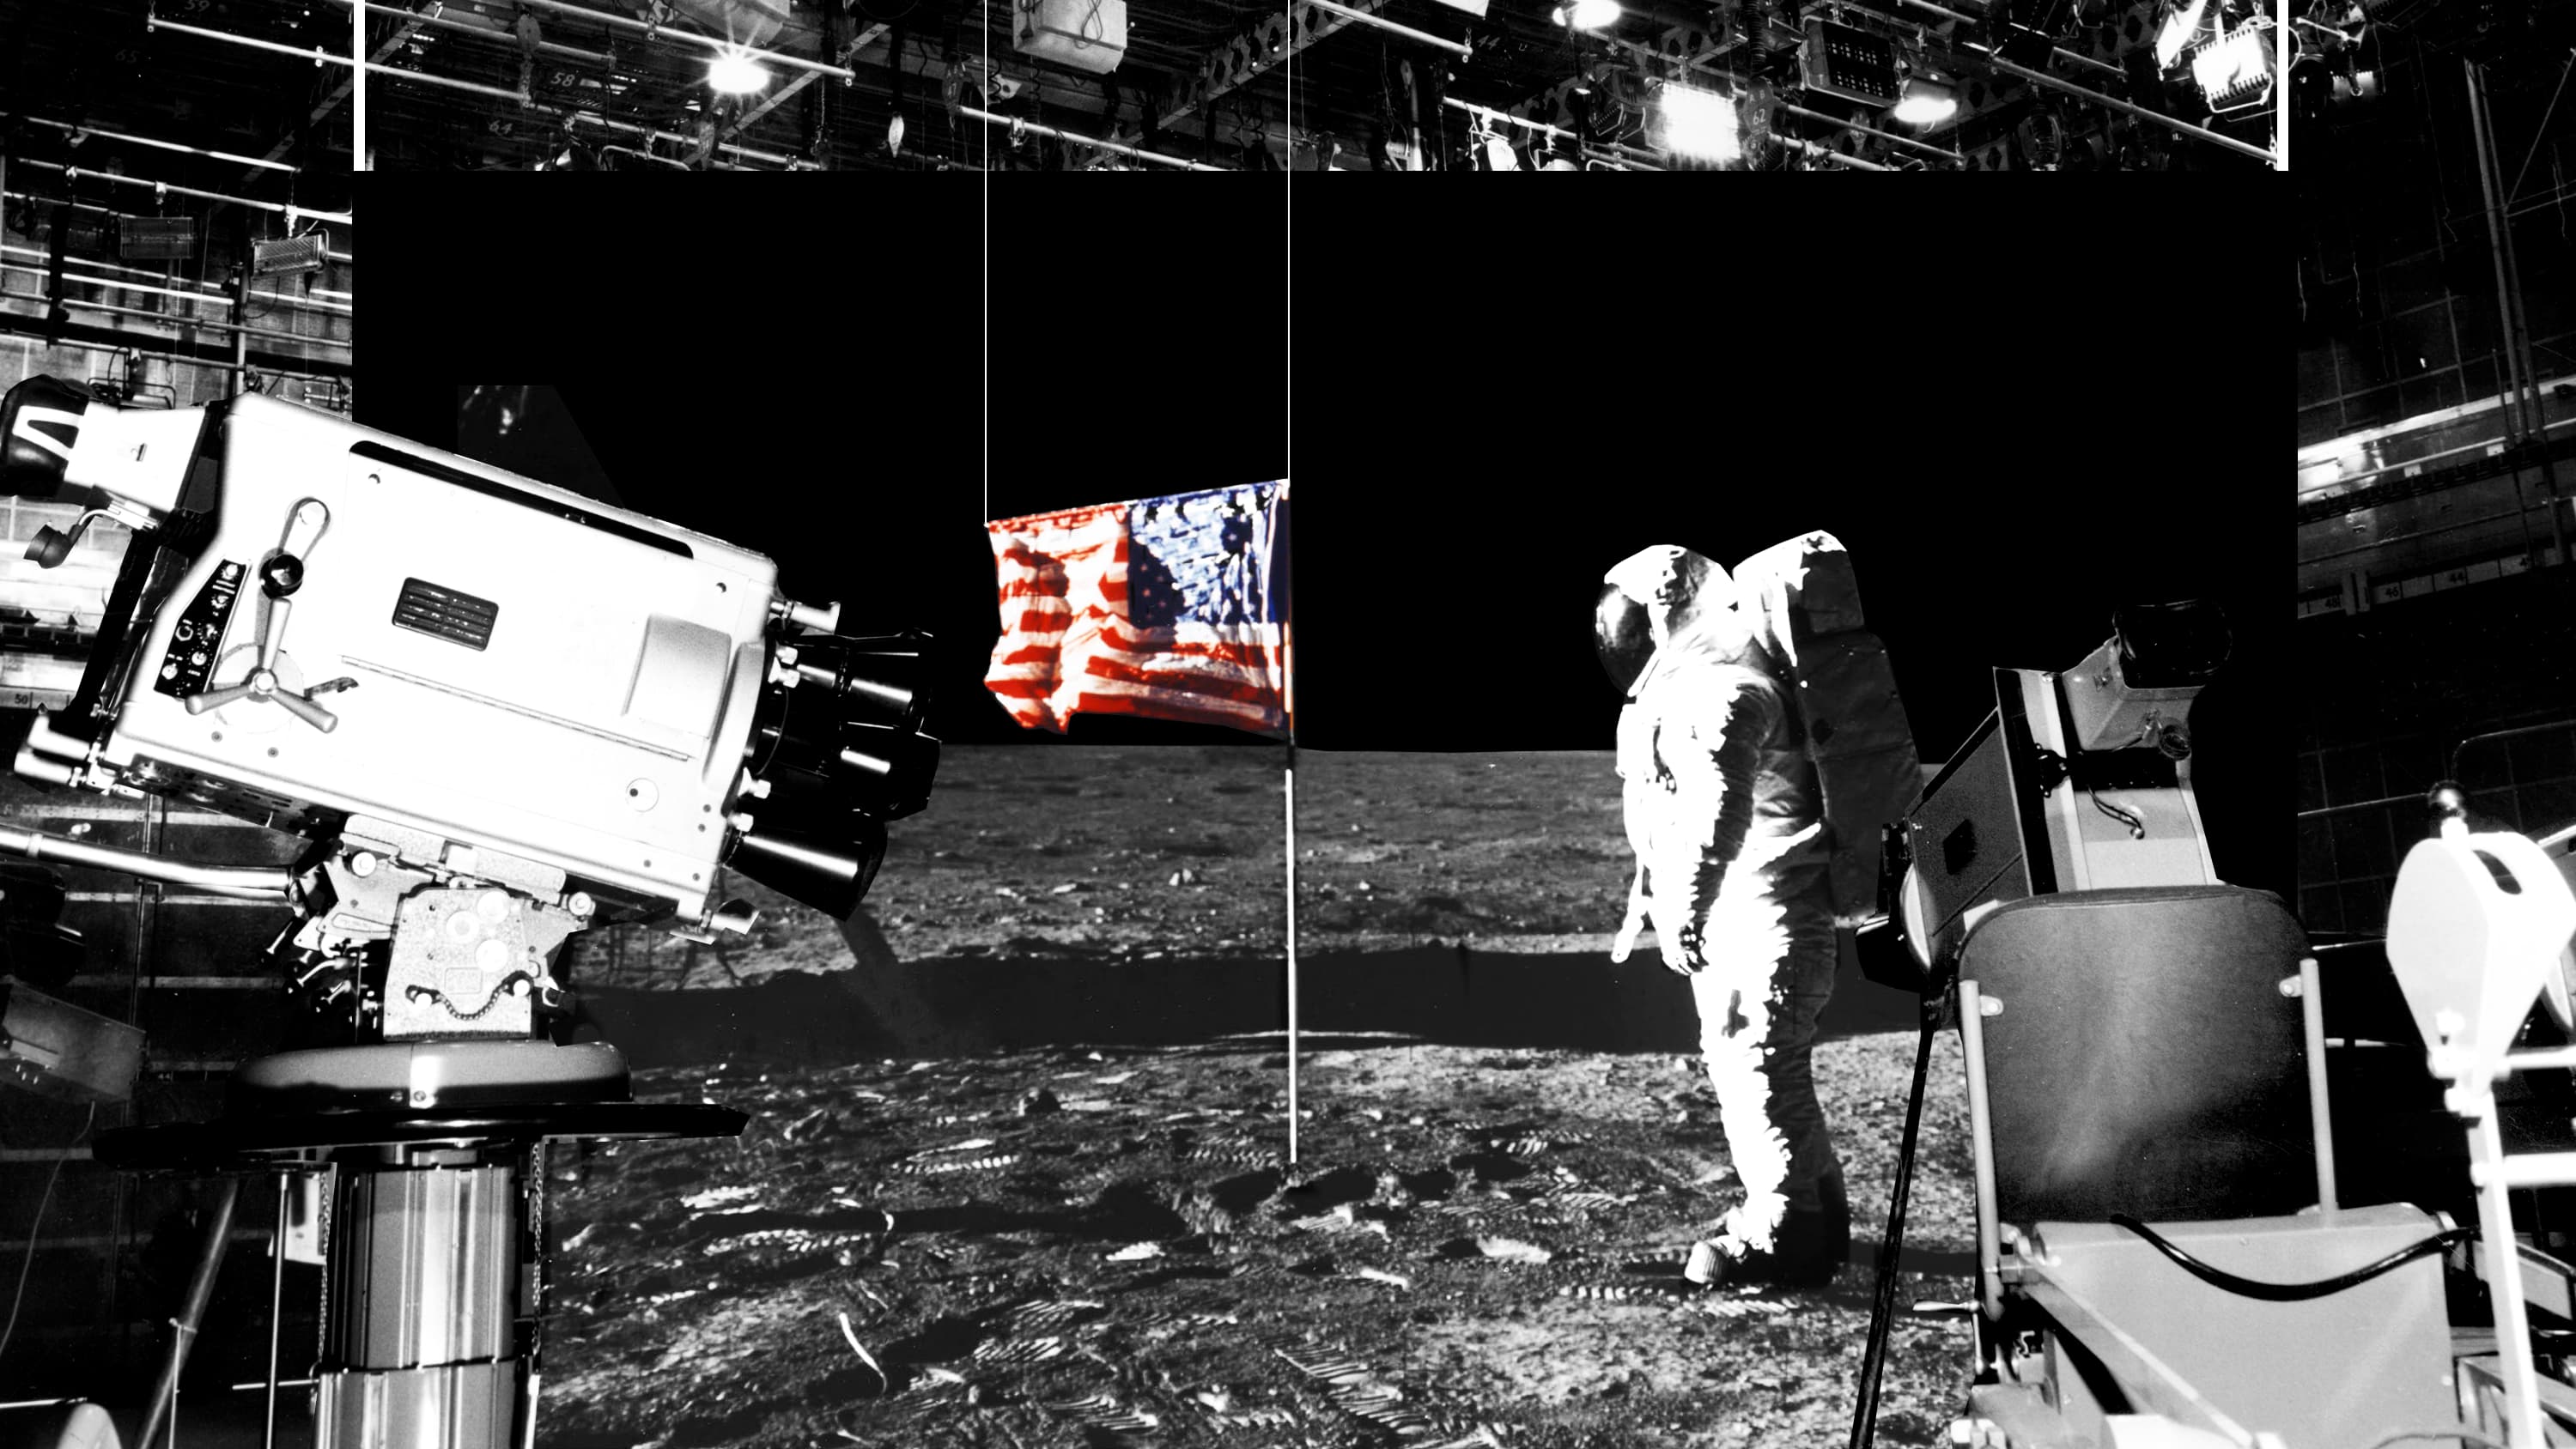 Ilustração mostra câmeras filmando o homem na Lua